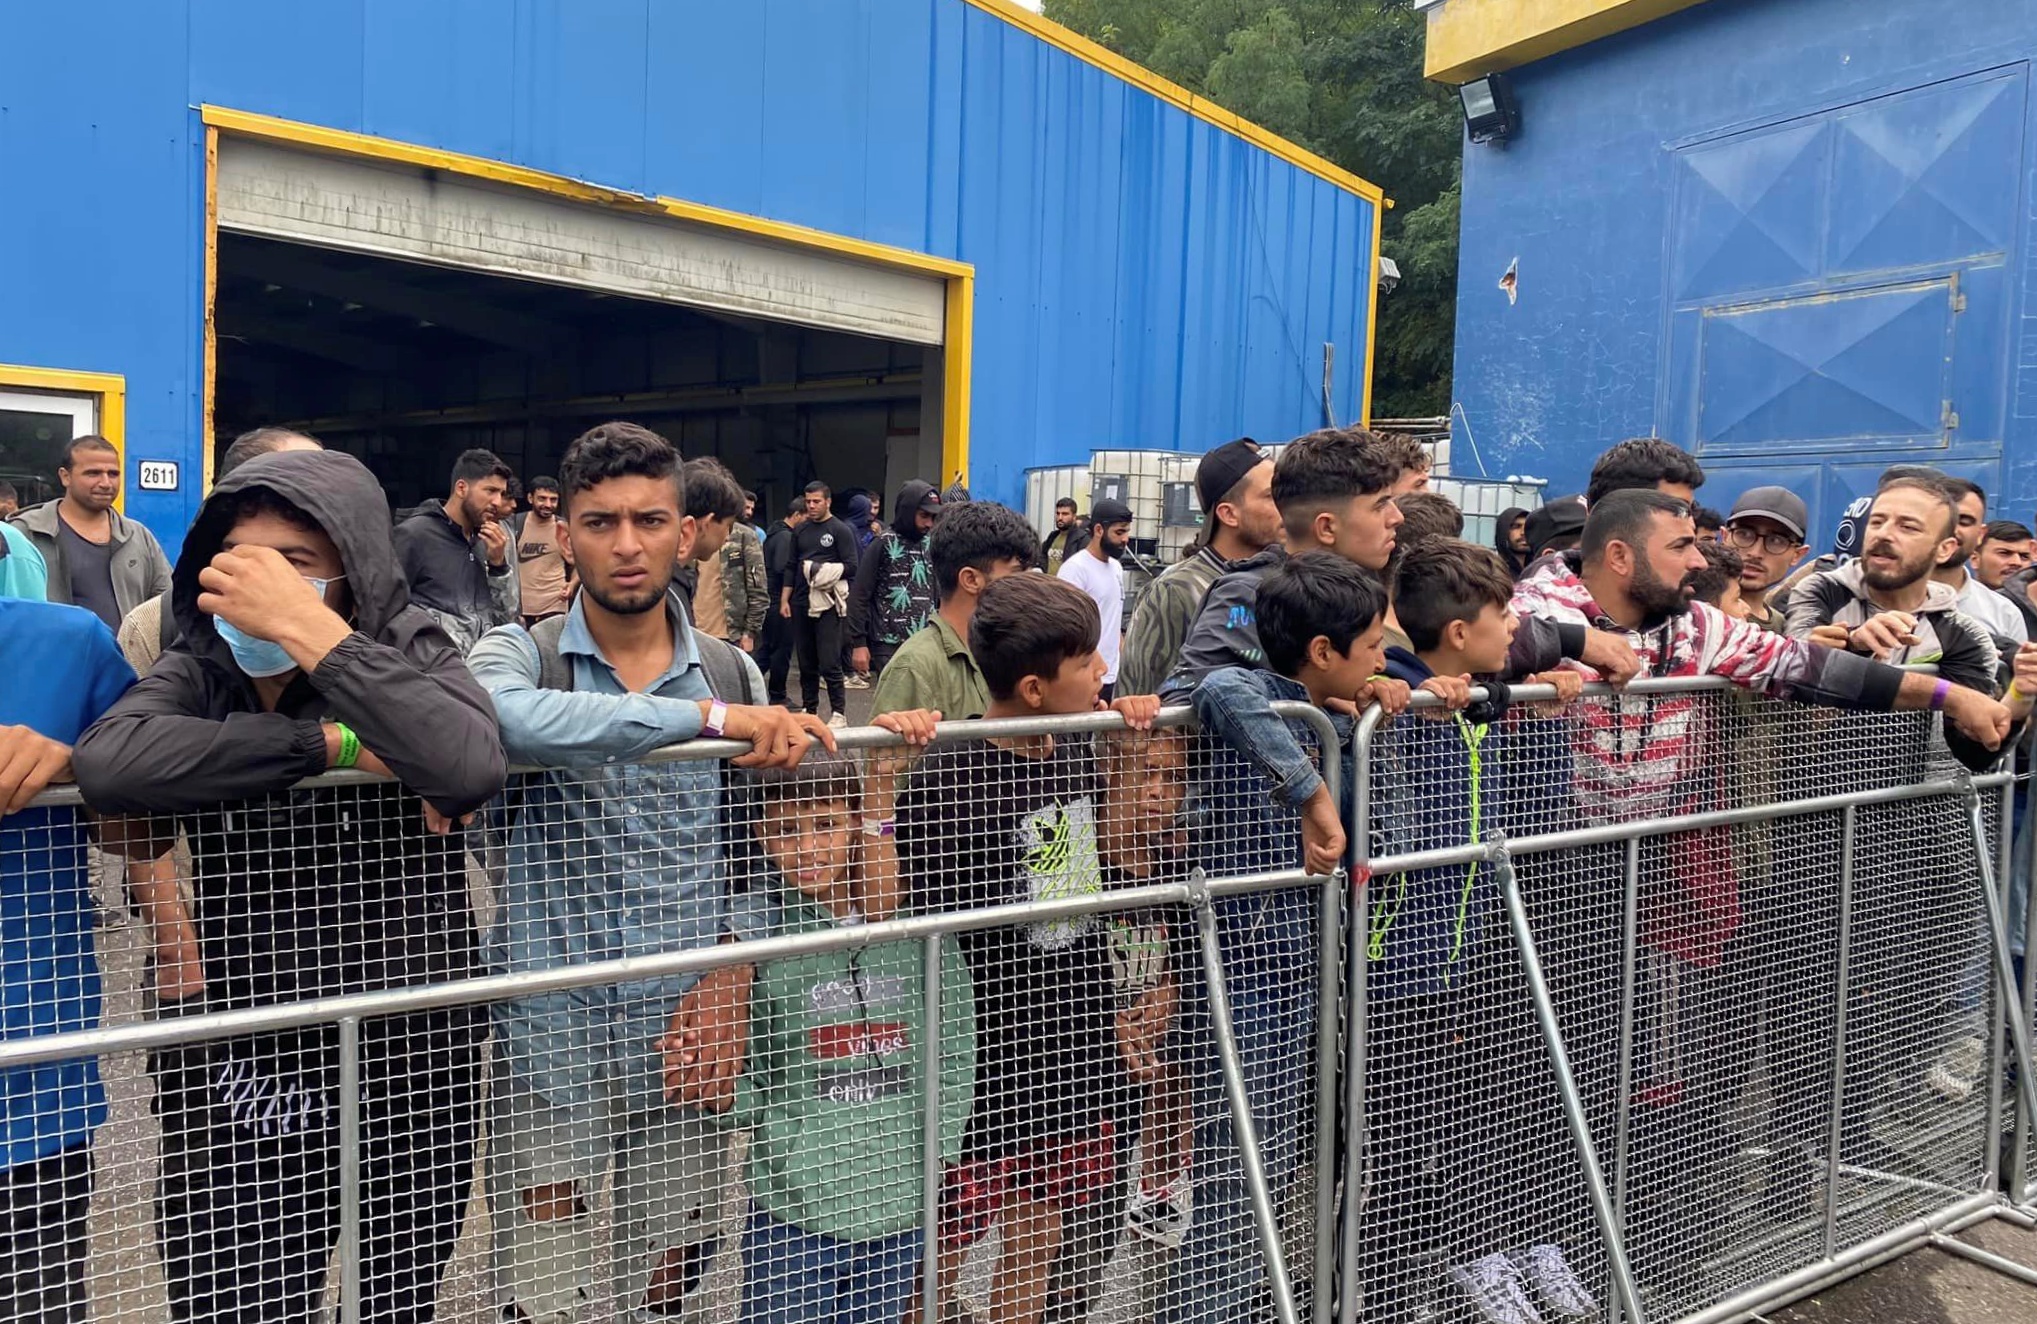 Názor: Invázia migrantov na Slovensku?  Obviňujte Maďarov